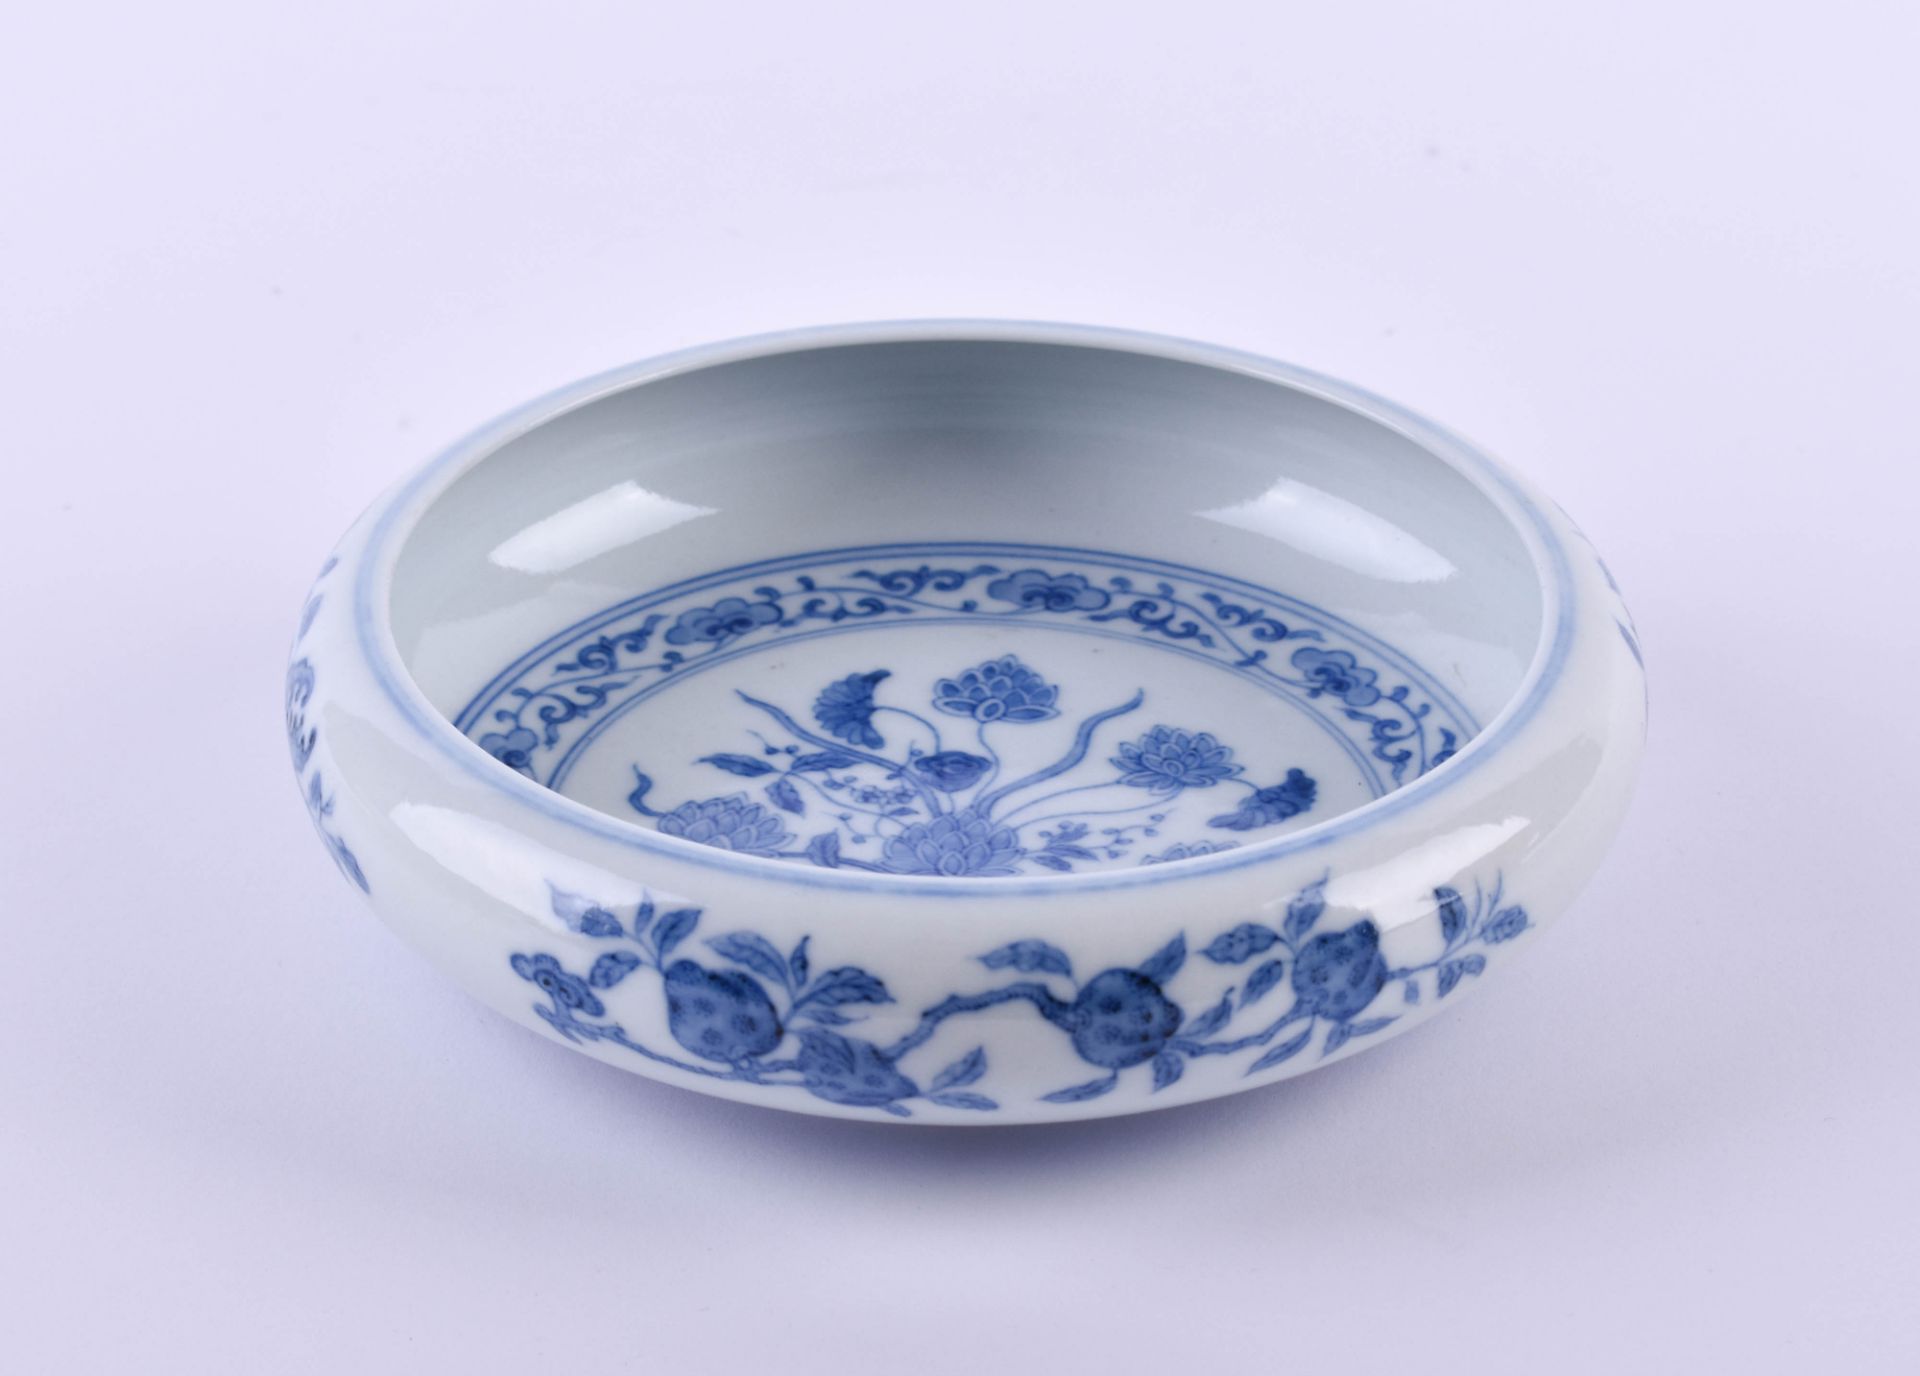  Bowl China Qing dynasty - Image 2 of 10